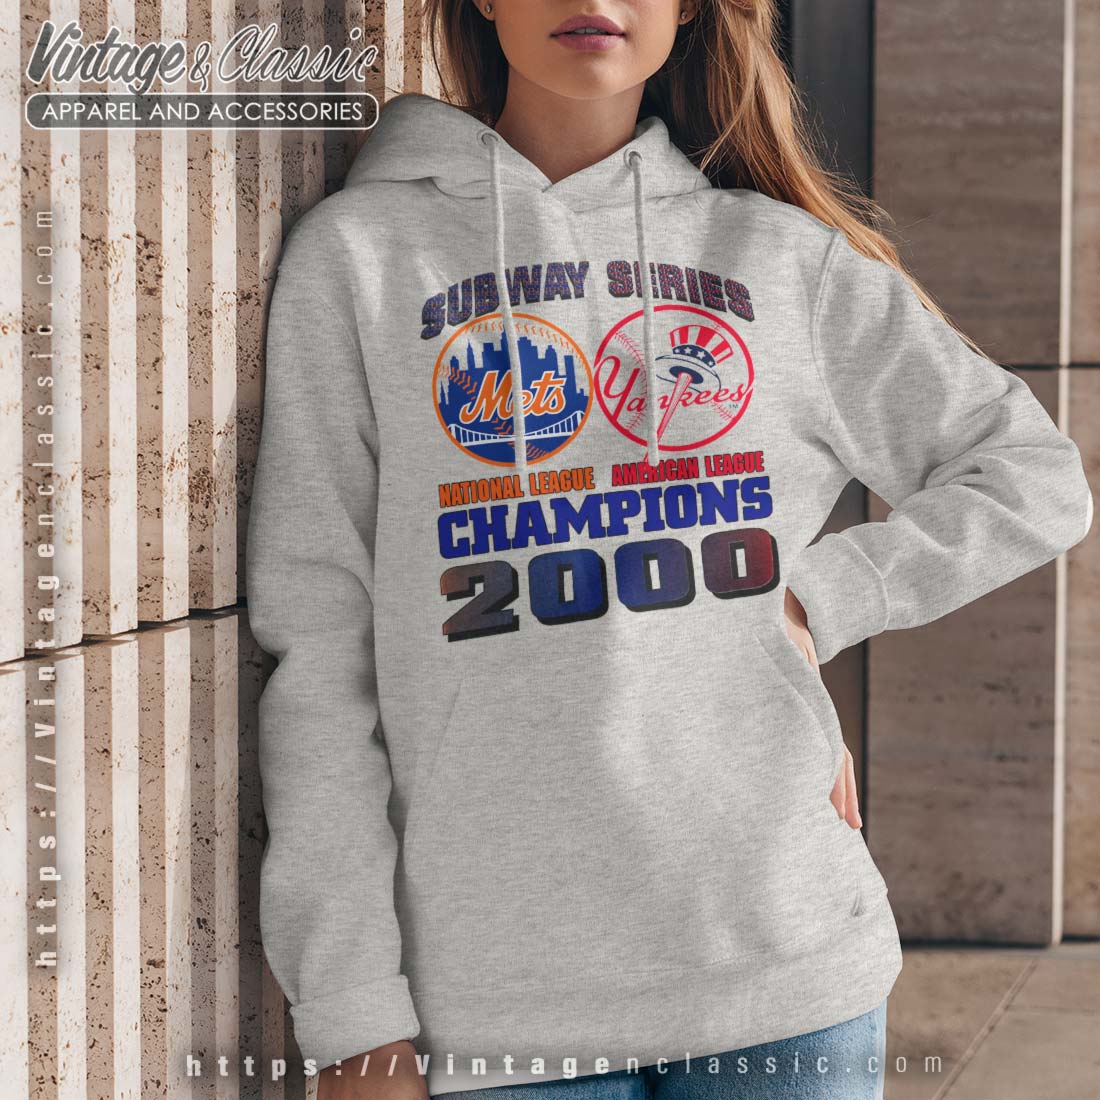 Derek Jeter Vintage New York Yankees Baseball Shirt, hoodie, sweater, long  sleeve and tank top